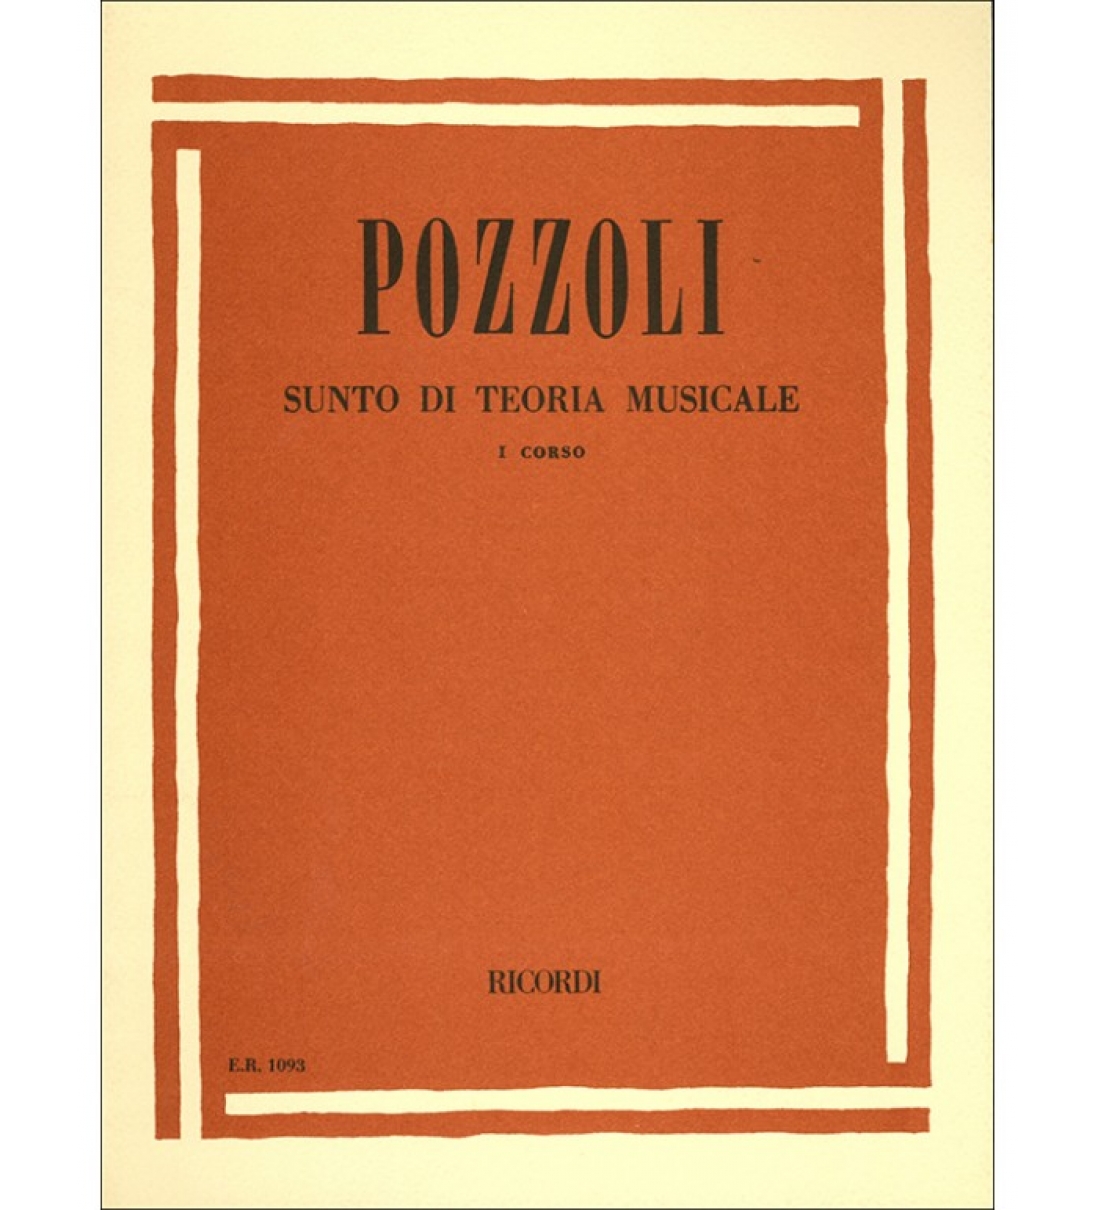 SUNTO DI TEORIA MUSICALE CORSO I - POZZOLI